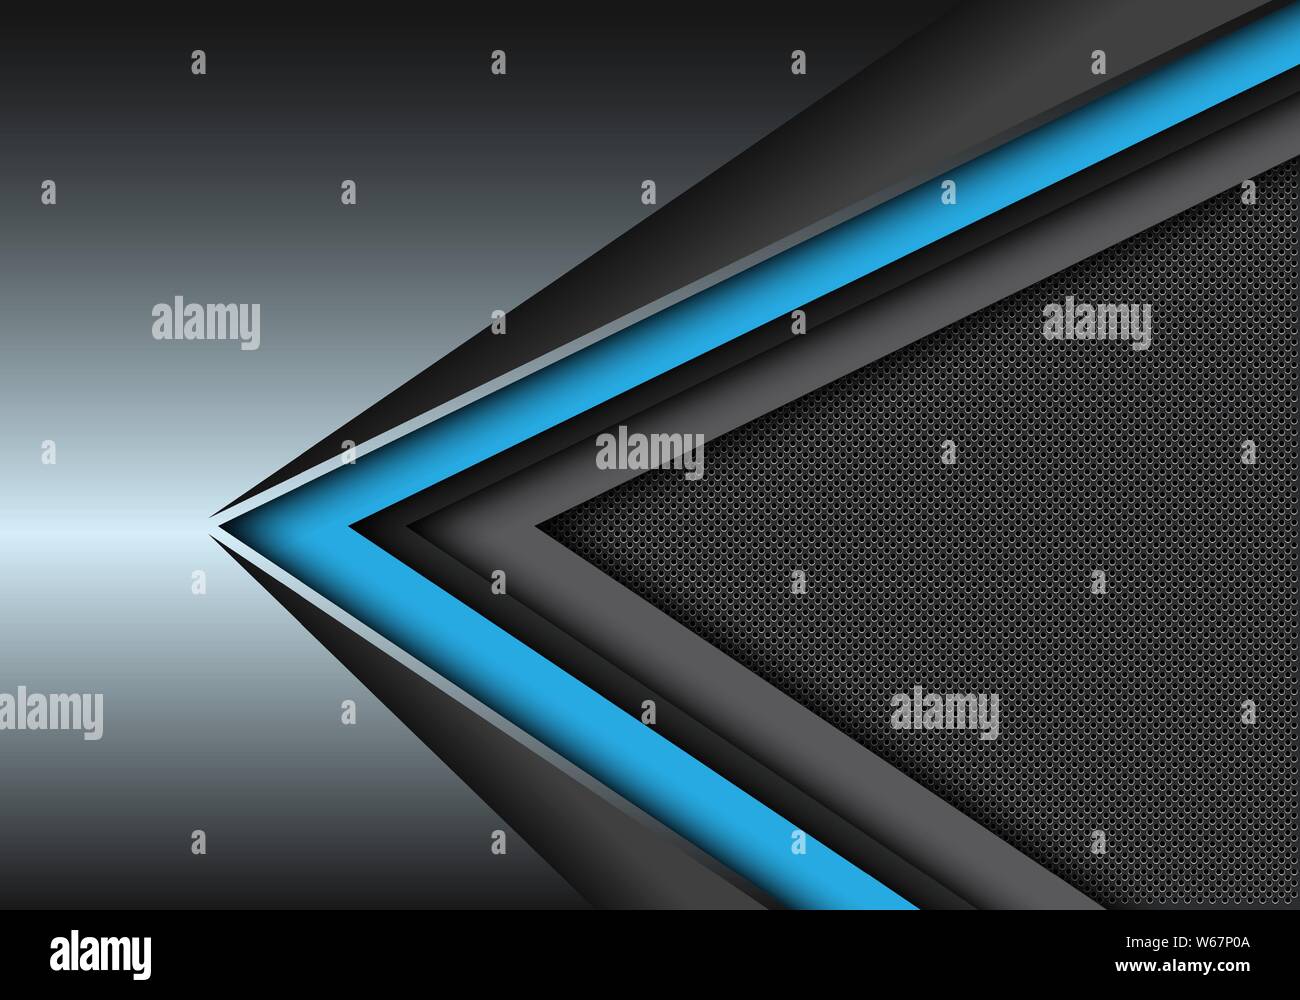 Abstrakt Blau Schwarz Geschwindigkeit Richtung auf metallischen mit Kreis mesh pattern Design moderne futuristischen Hintergrund Vector Illustration. Stock Vektor